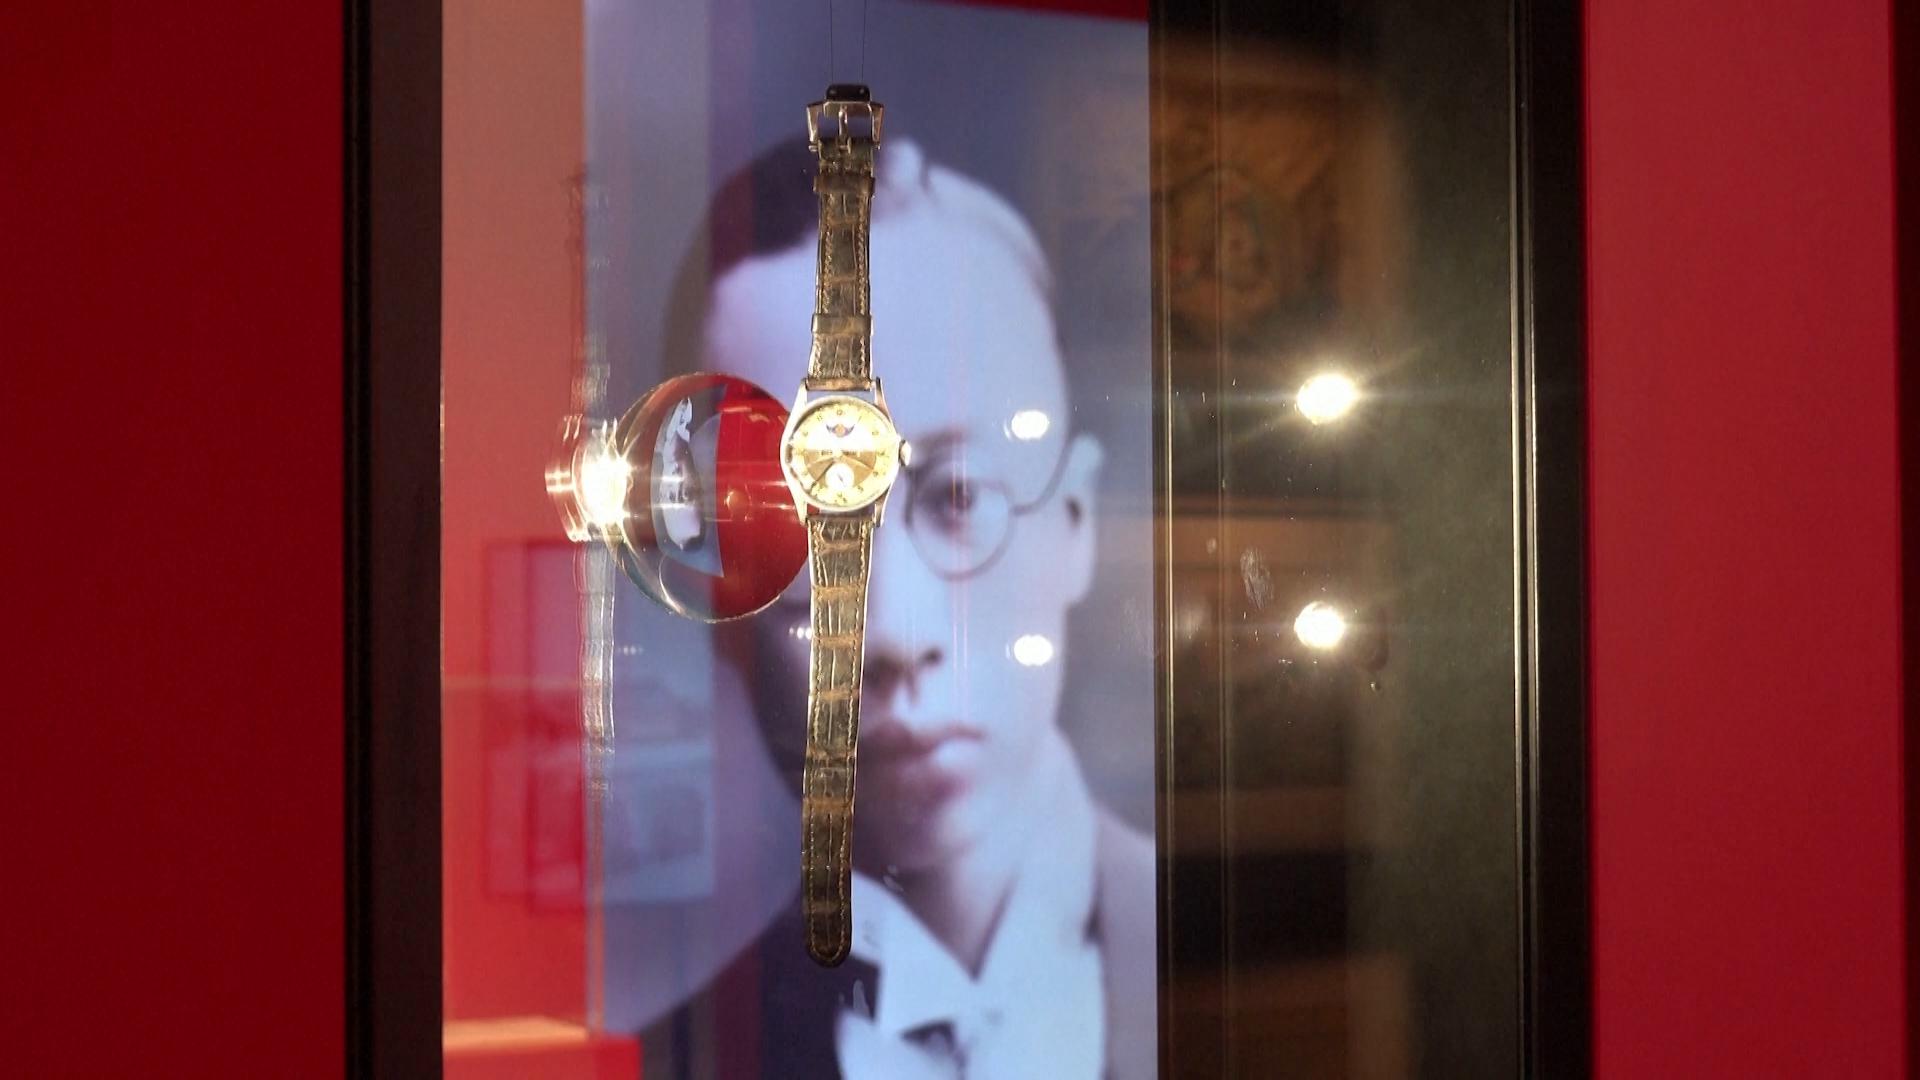 Часы последнего императора Китая проданы на аукционе. Видео